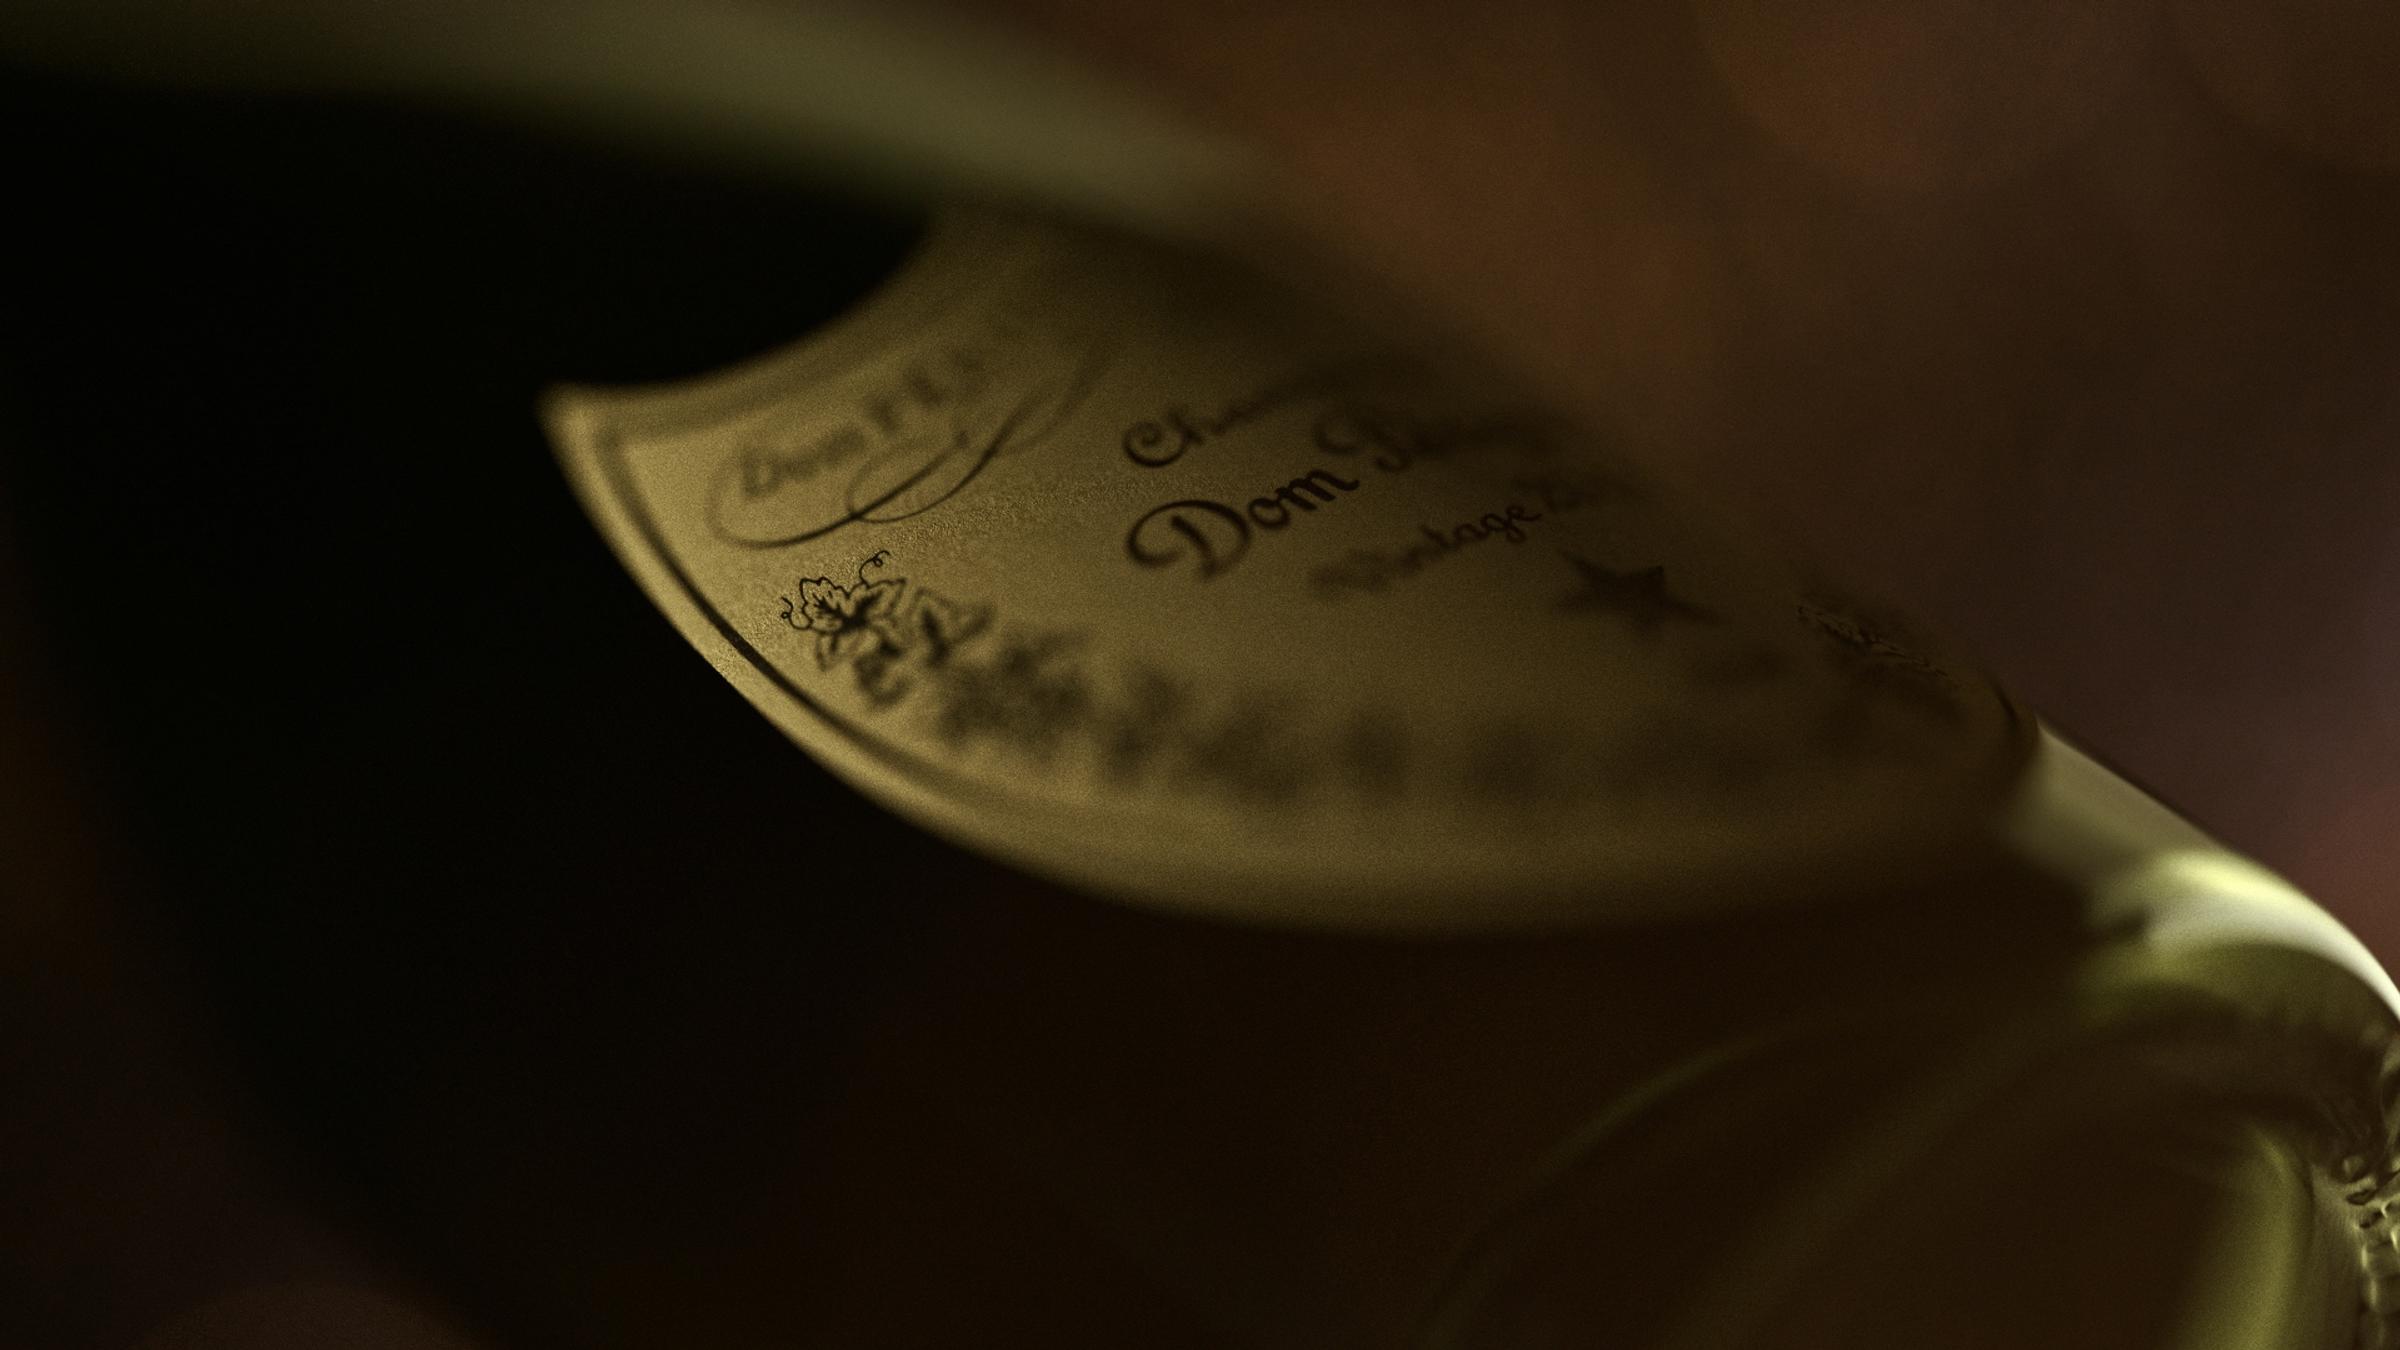 Dom Pérignon Vintage 2013 Champagne